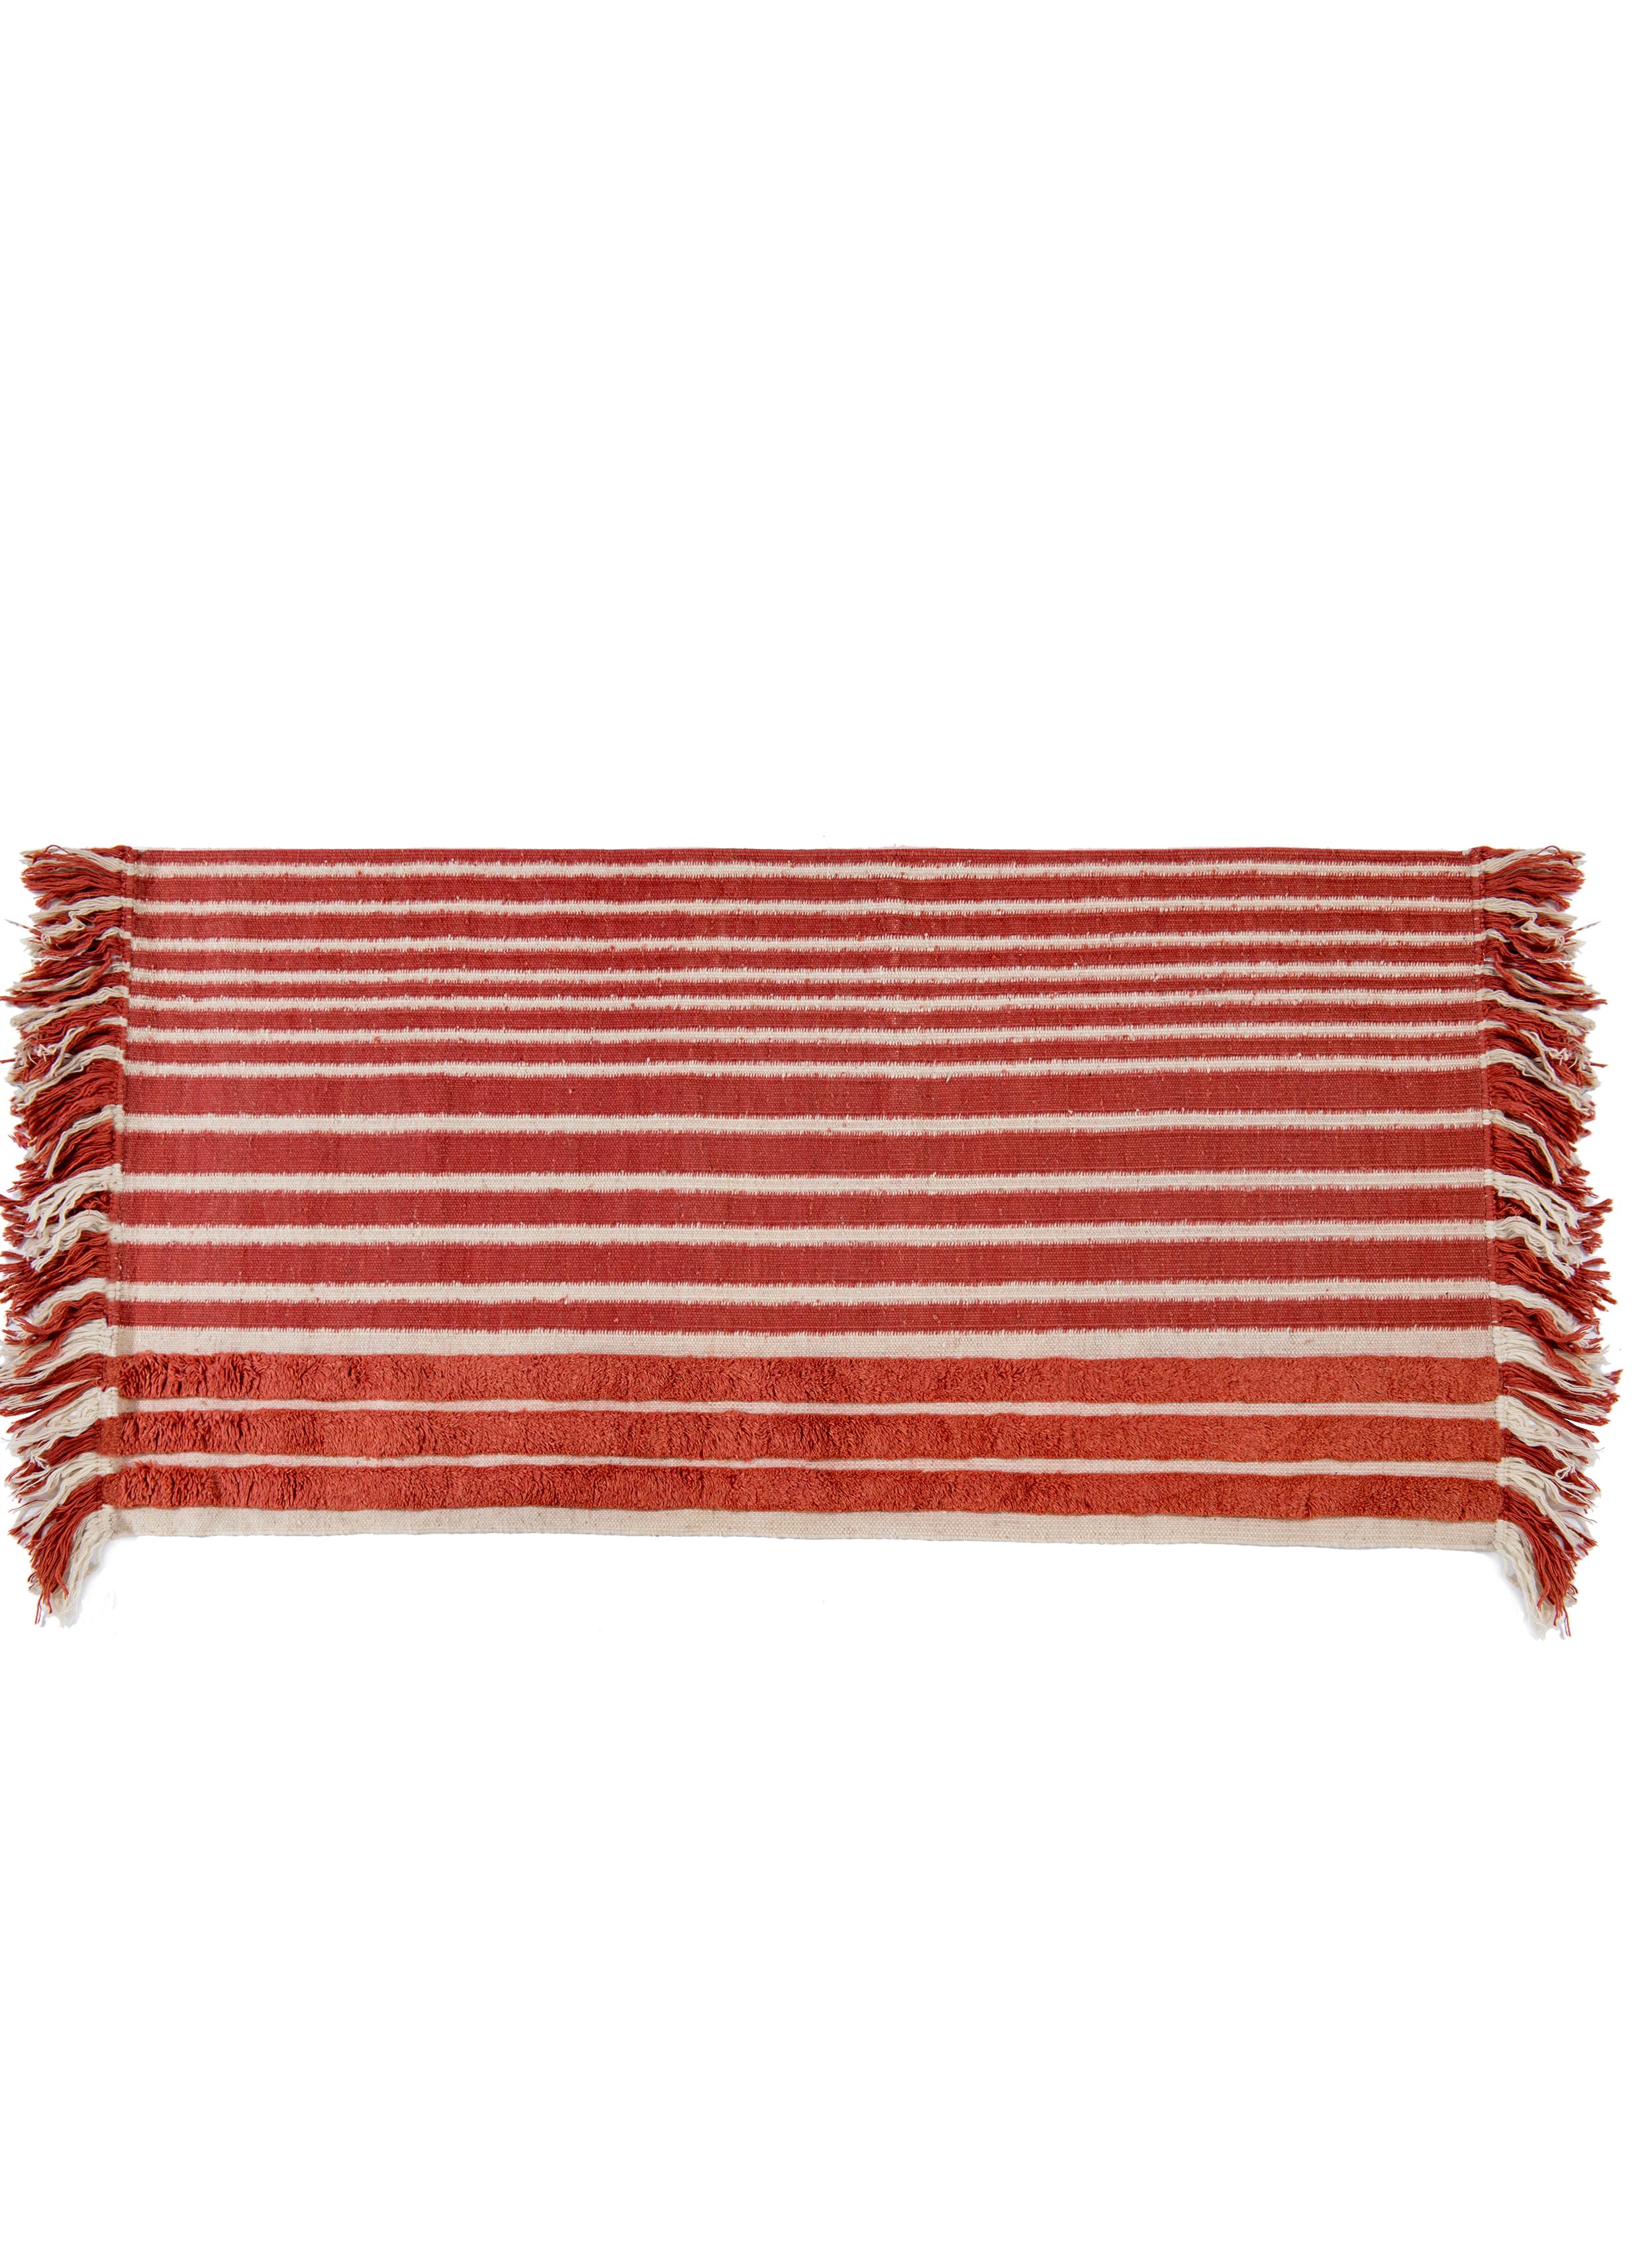 Nr. 280 Freeplay handgeknüpfter Teppich von Lyk Carpet
Abmessungen: B 90 x L 180 cm.
MATERIALIEN: 100% tibetische Hochlandwolle, handgekämmte und handgesponnene Schurwolle, natürliche pflanzengefärbte Wolle, 100 Knoten pro Quadratzoll.
Handgeknüpfte